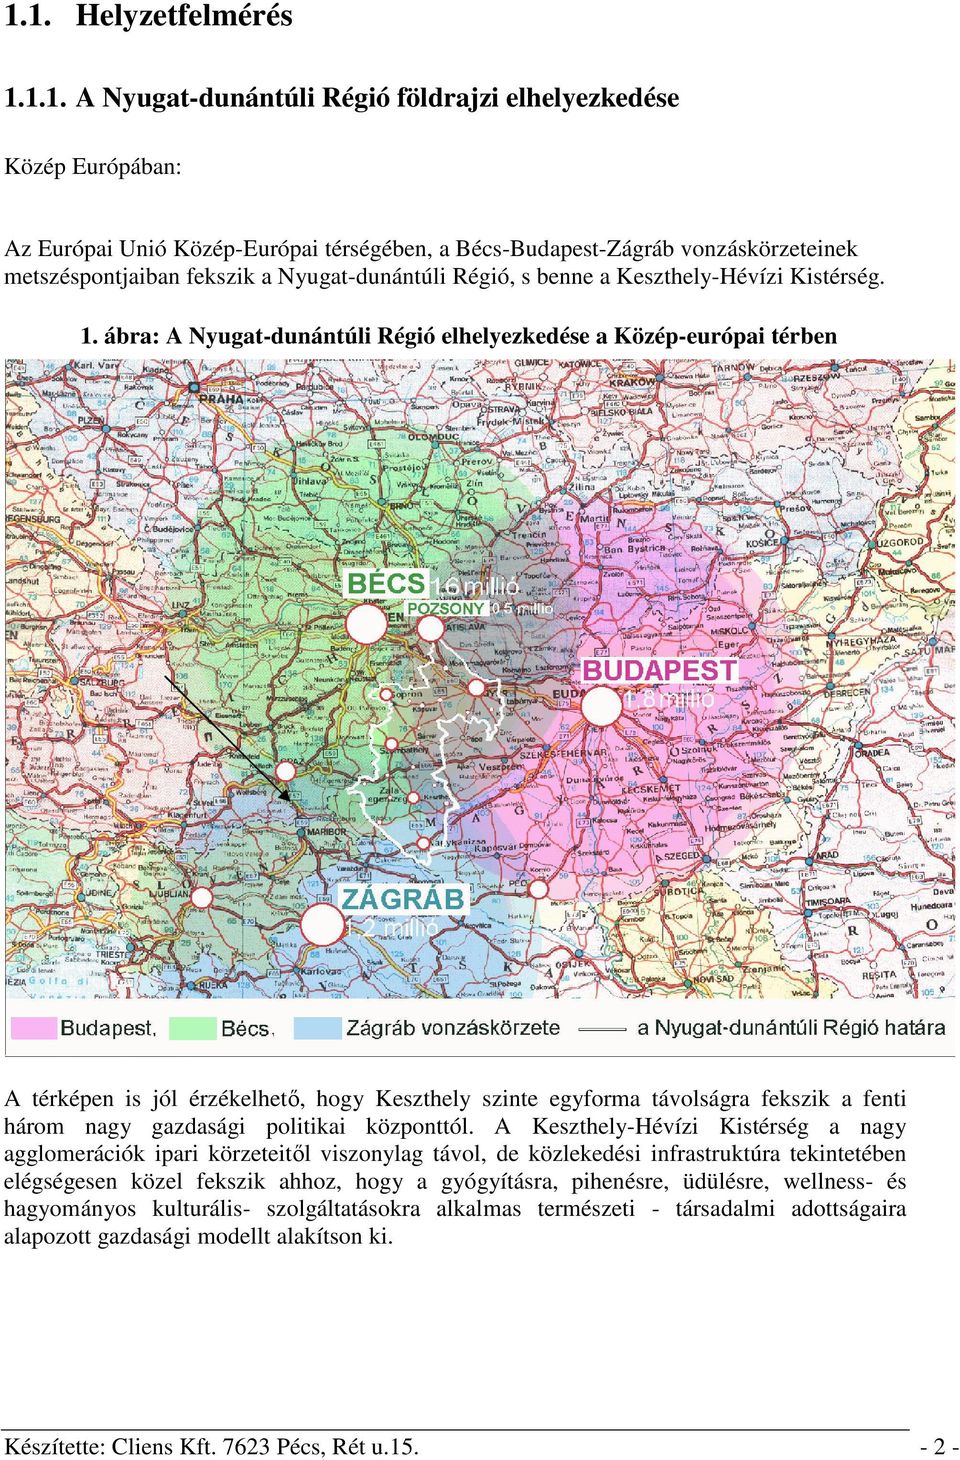 ábra: A Nyugat-dunántúli Régió elhelyezkedése a Közép-európai térben A térképen is jól érzékelhető, hogy Keszthely szinte egyforma távolságra fekszik a fenti három nagy gazdasági politikai központtól.